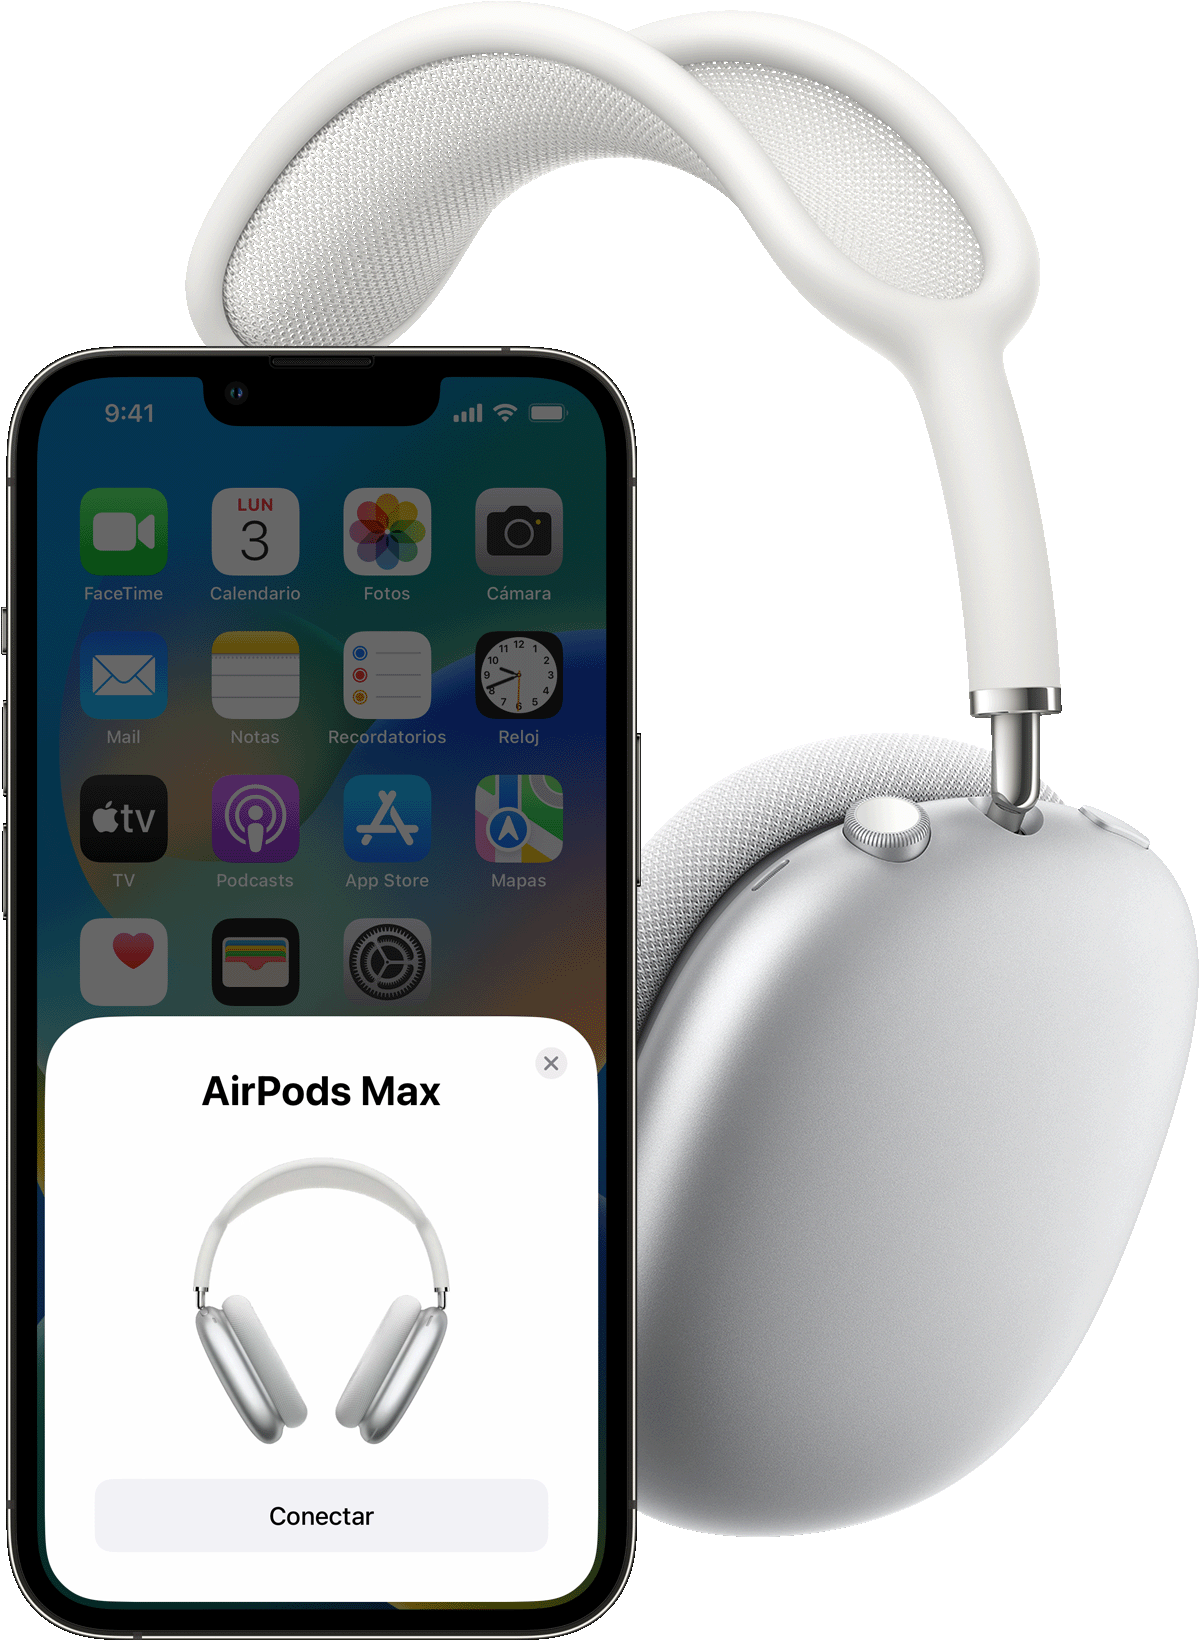 Conectar y usar los AirPods Max - Soporte técnico de Apple